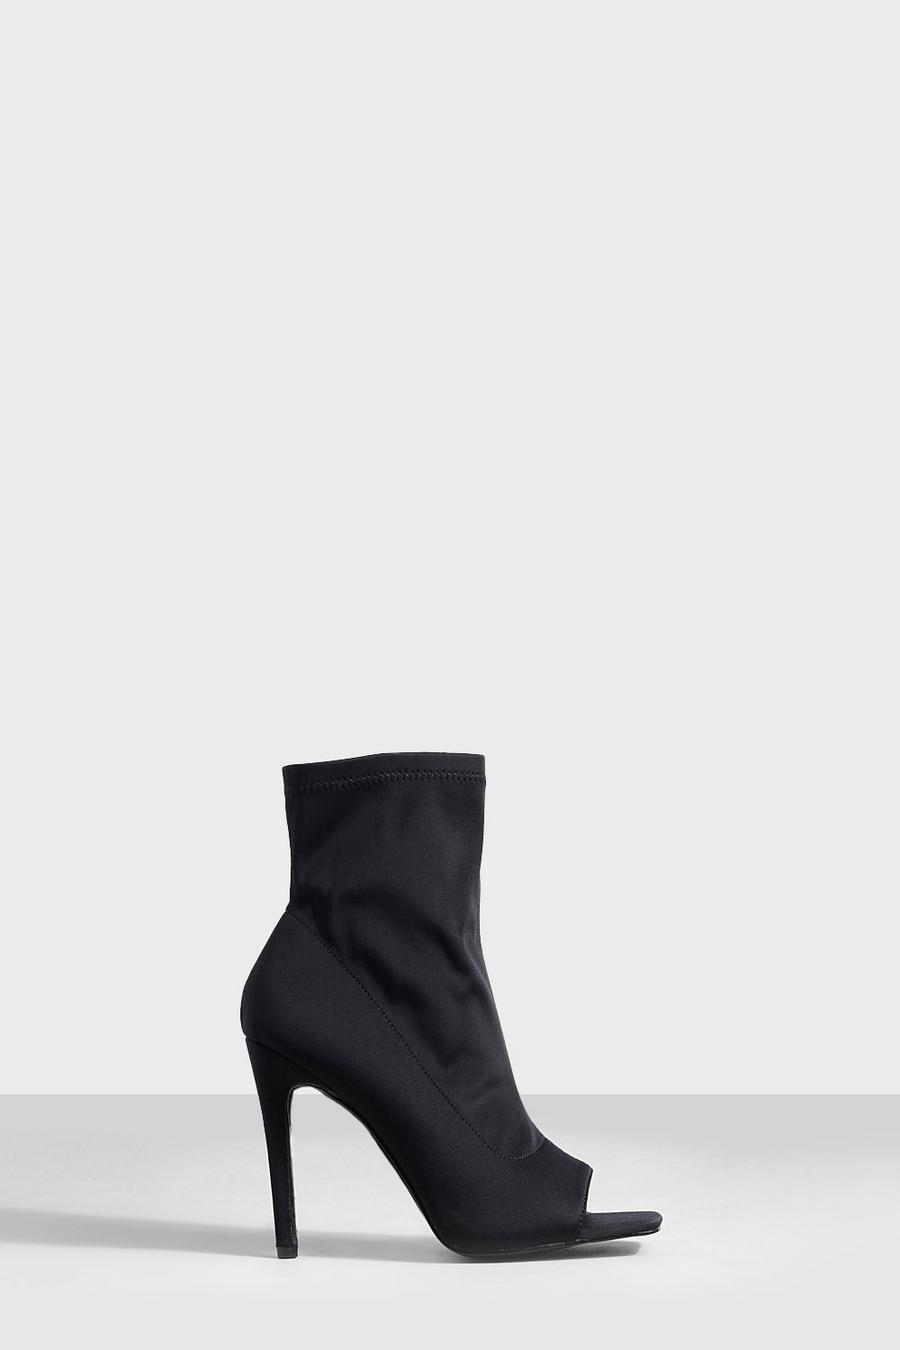 Sandalias calcetín con abertura en la punta, Negro nero